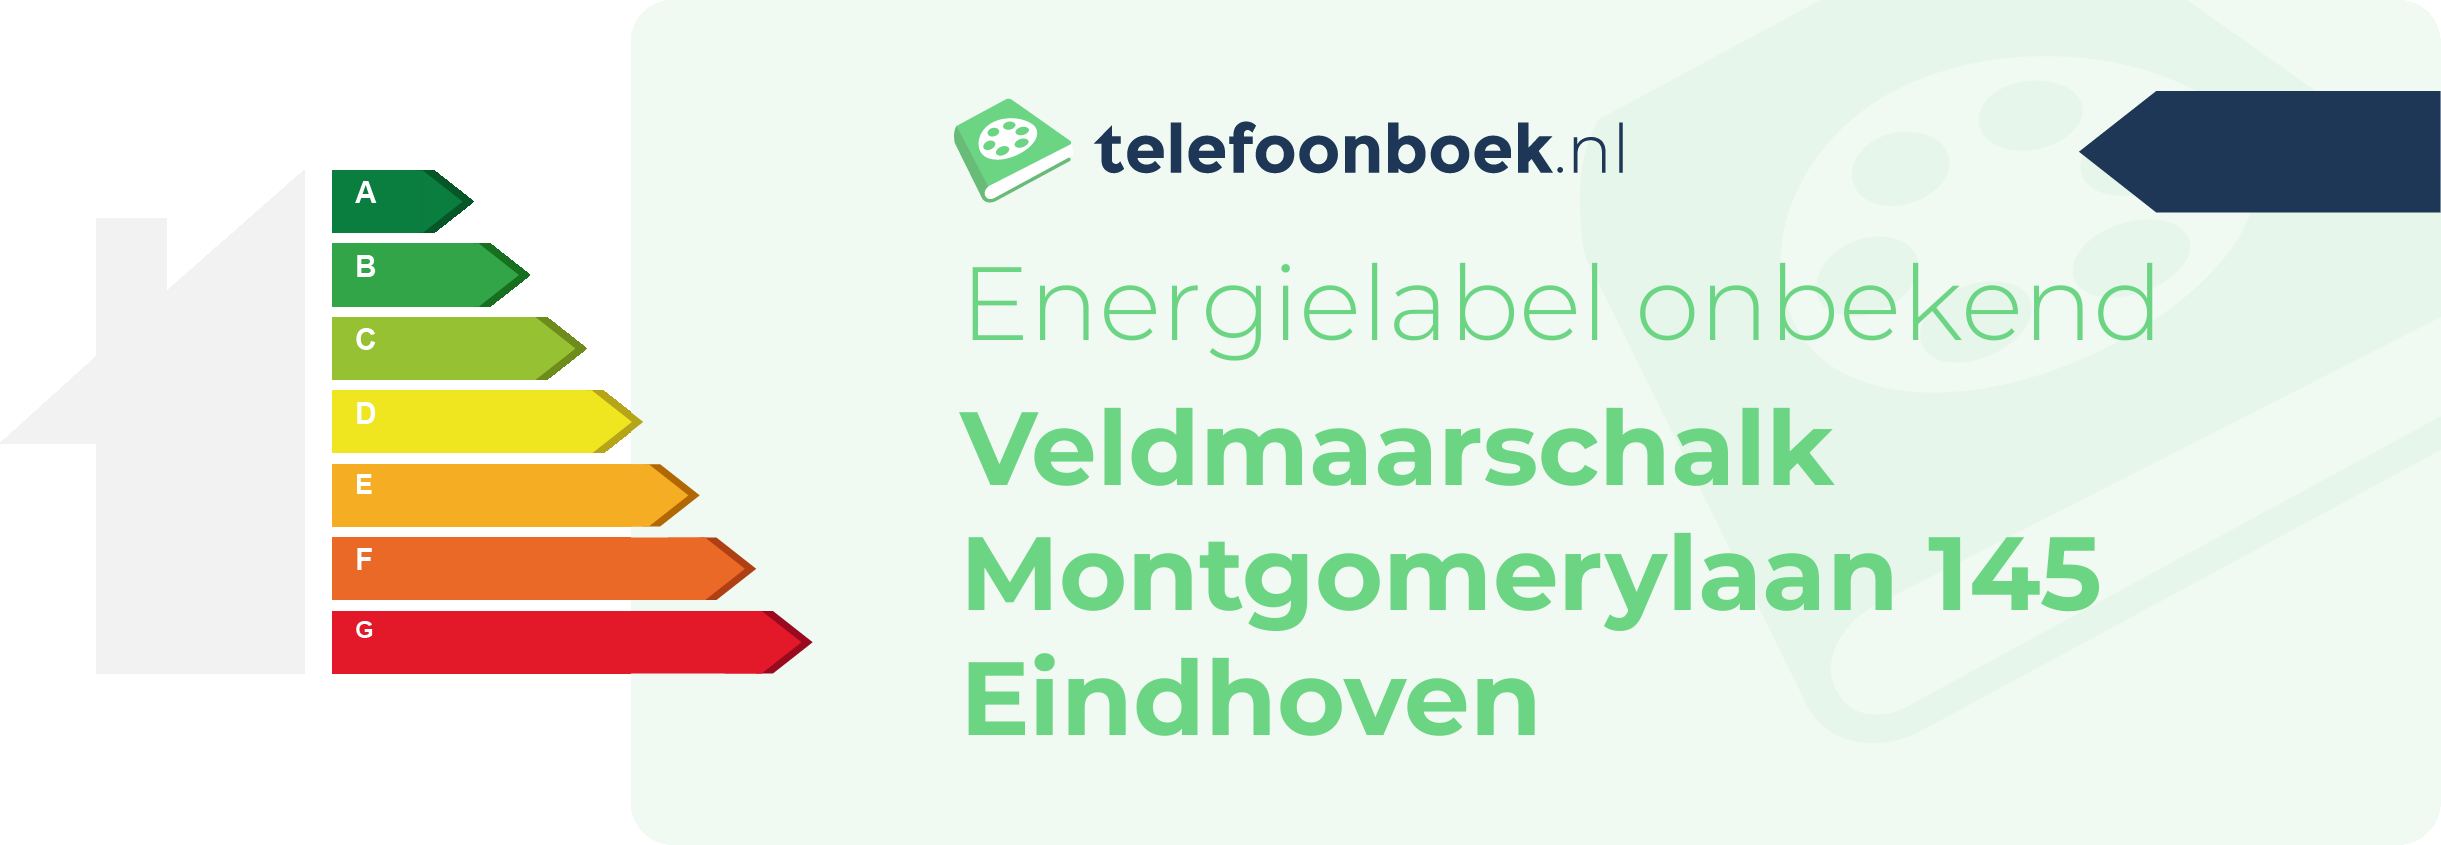 Energielabel Veldmaarschalk Montgomerylaan 145 Eindhoven